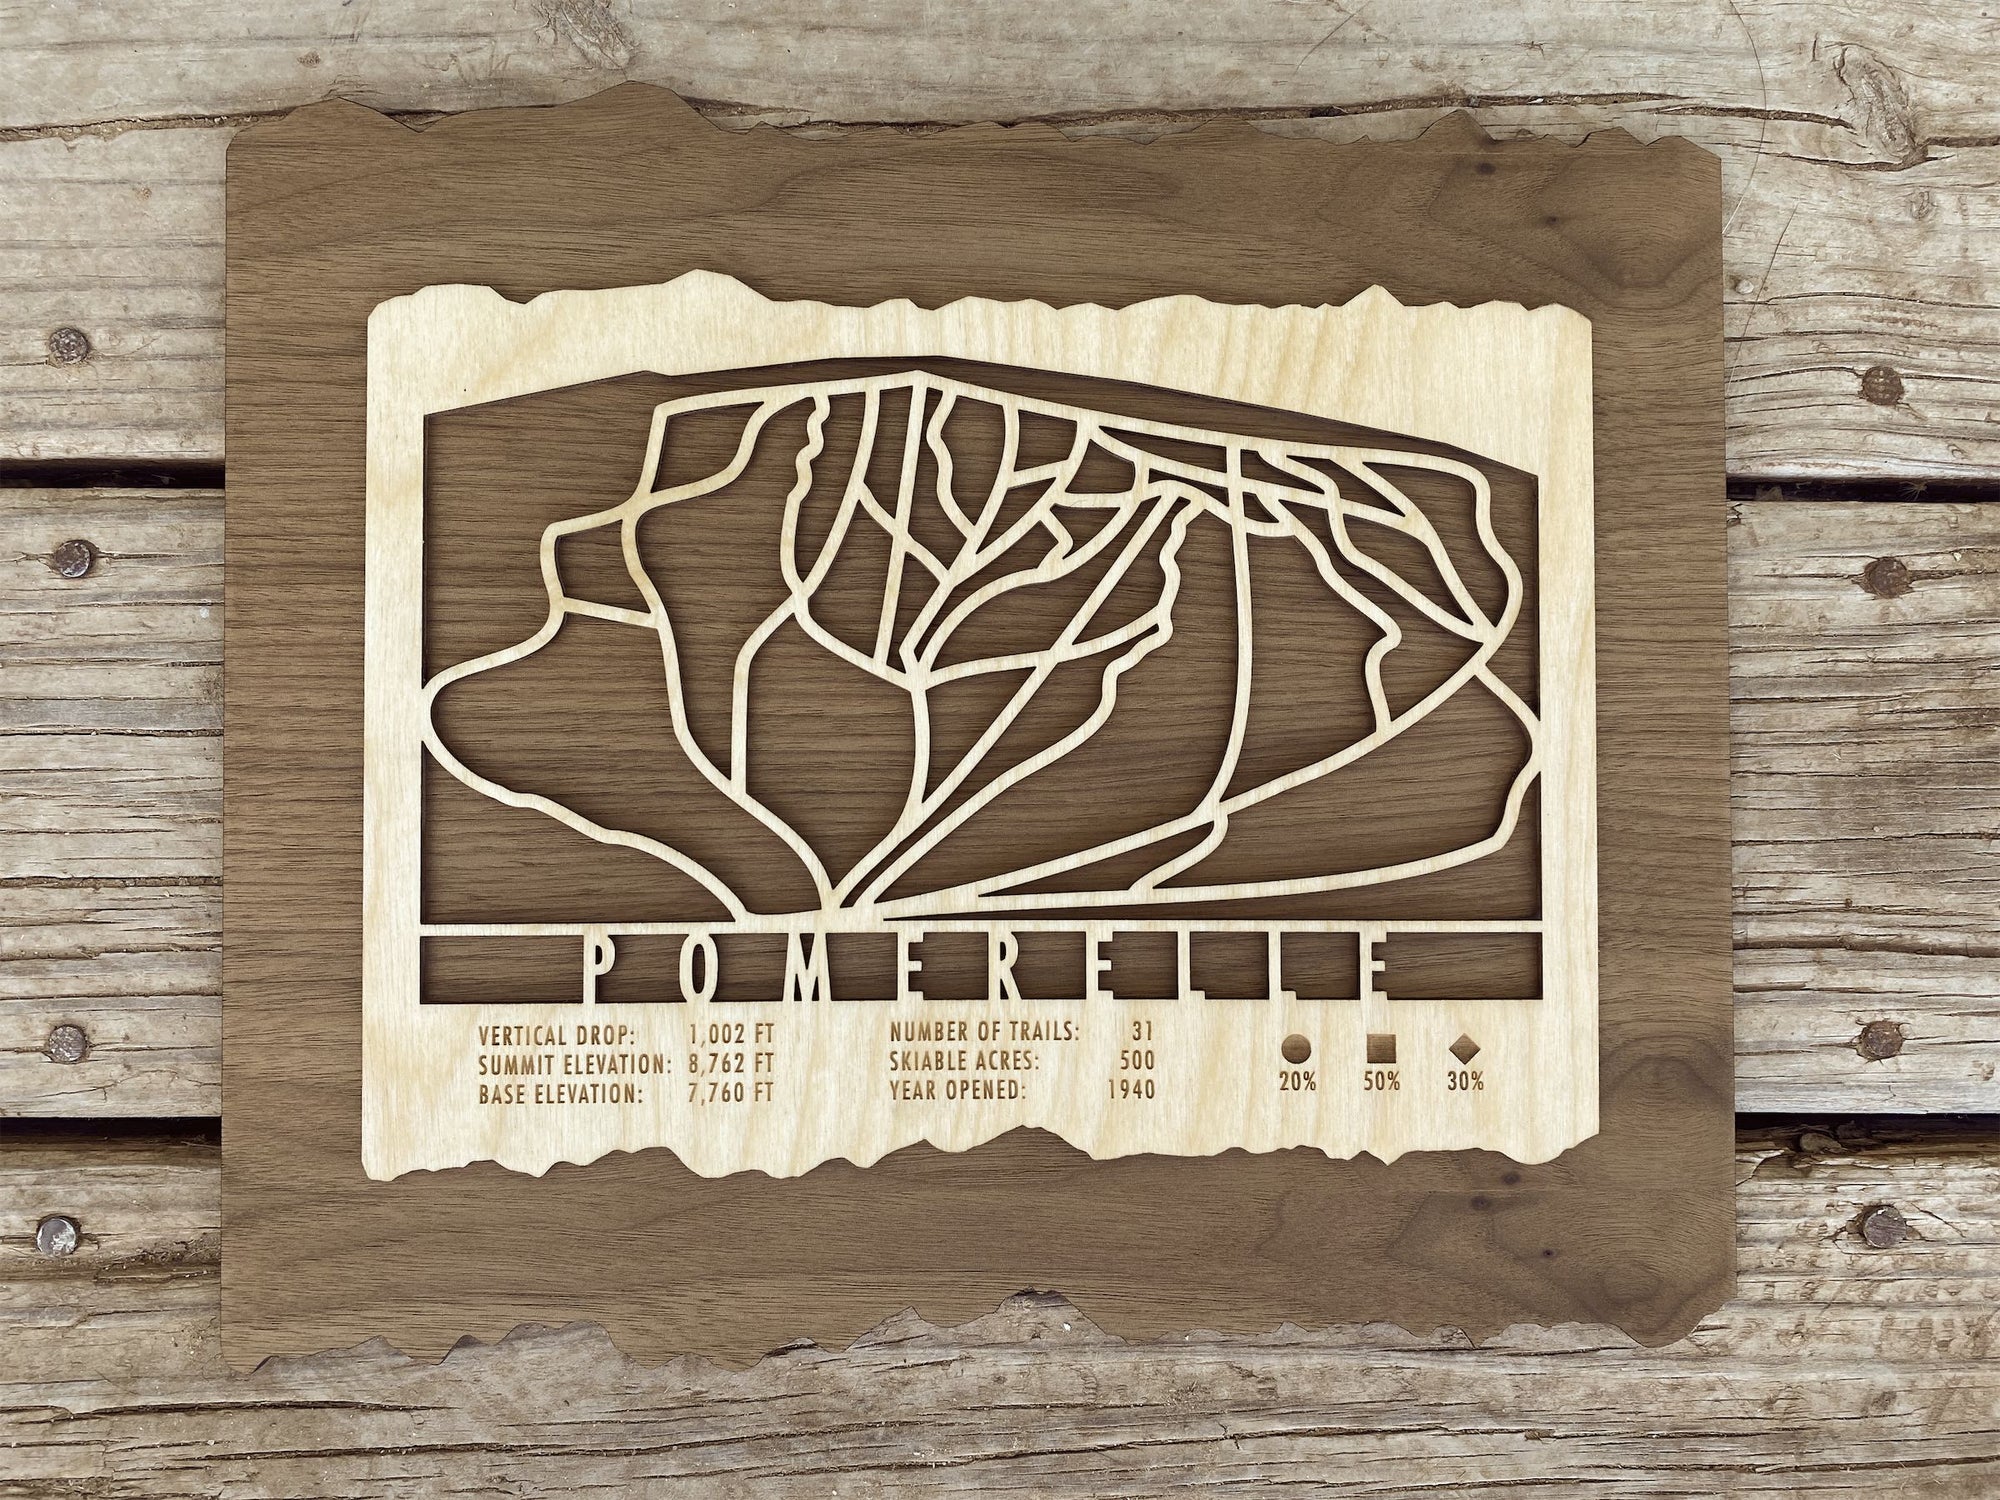 Pomerelle Ski Trail Map